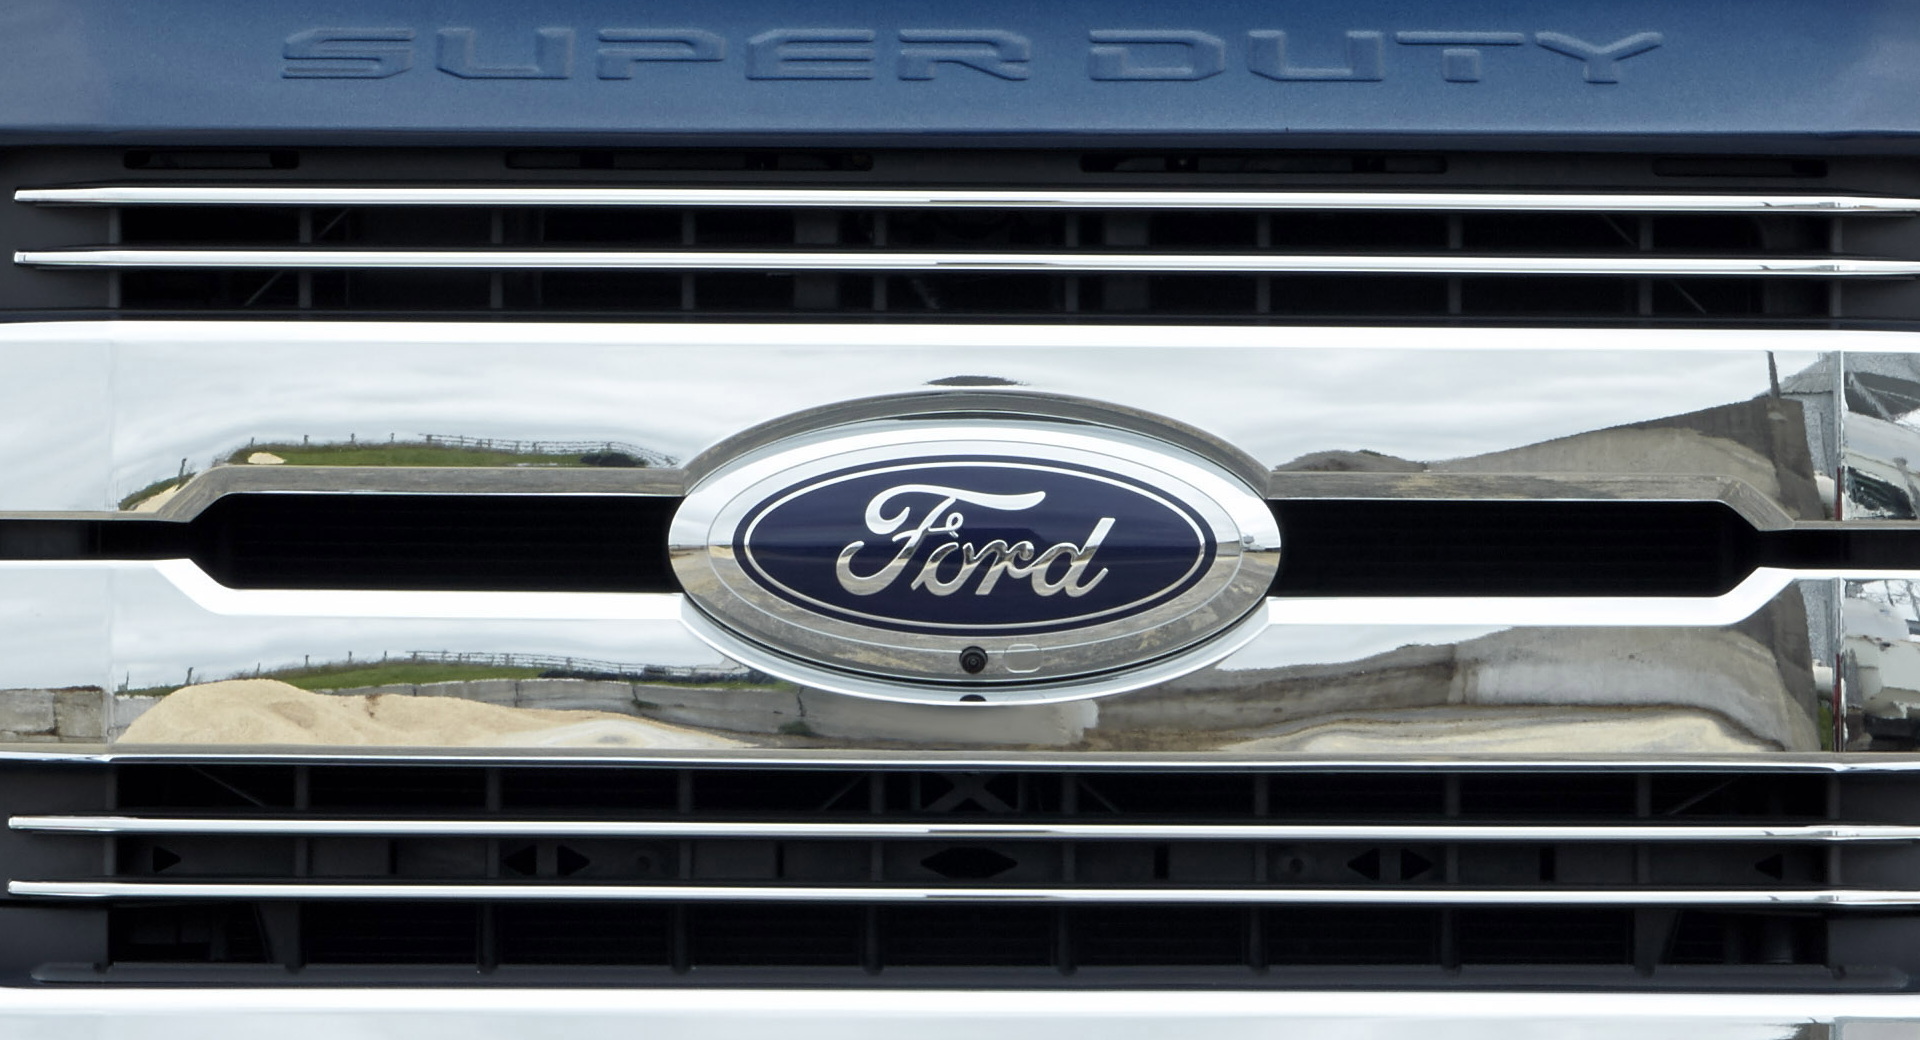 Ford fera appel d’un verdict de 1,7 milliard de dollars contre lui dans le cas de la résistance du toit du F-250